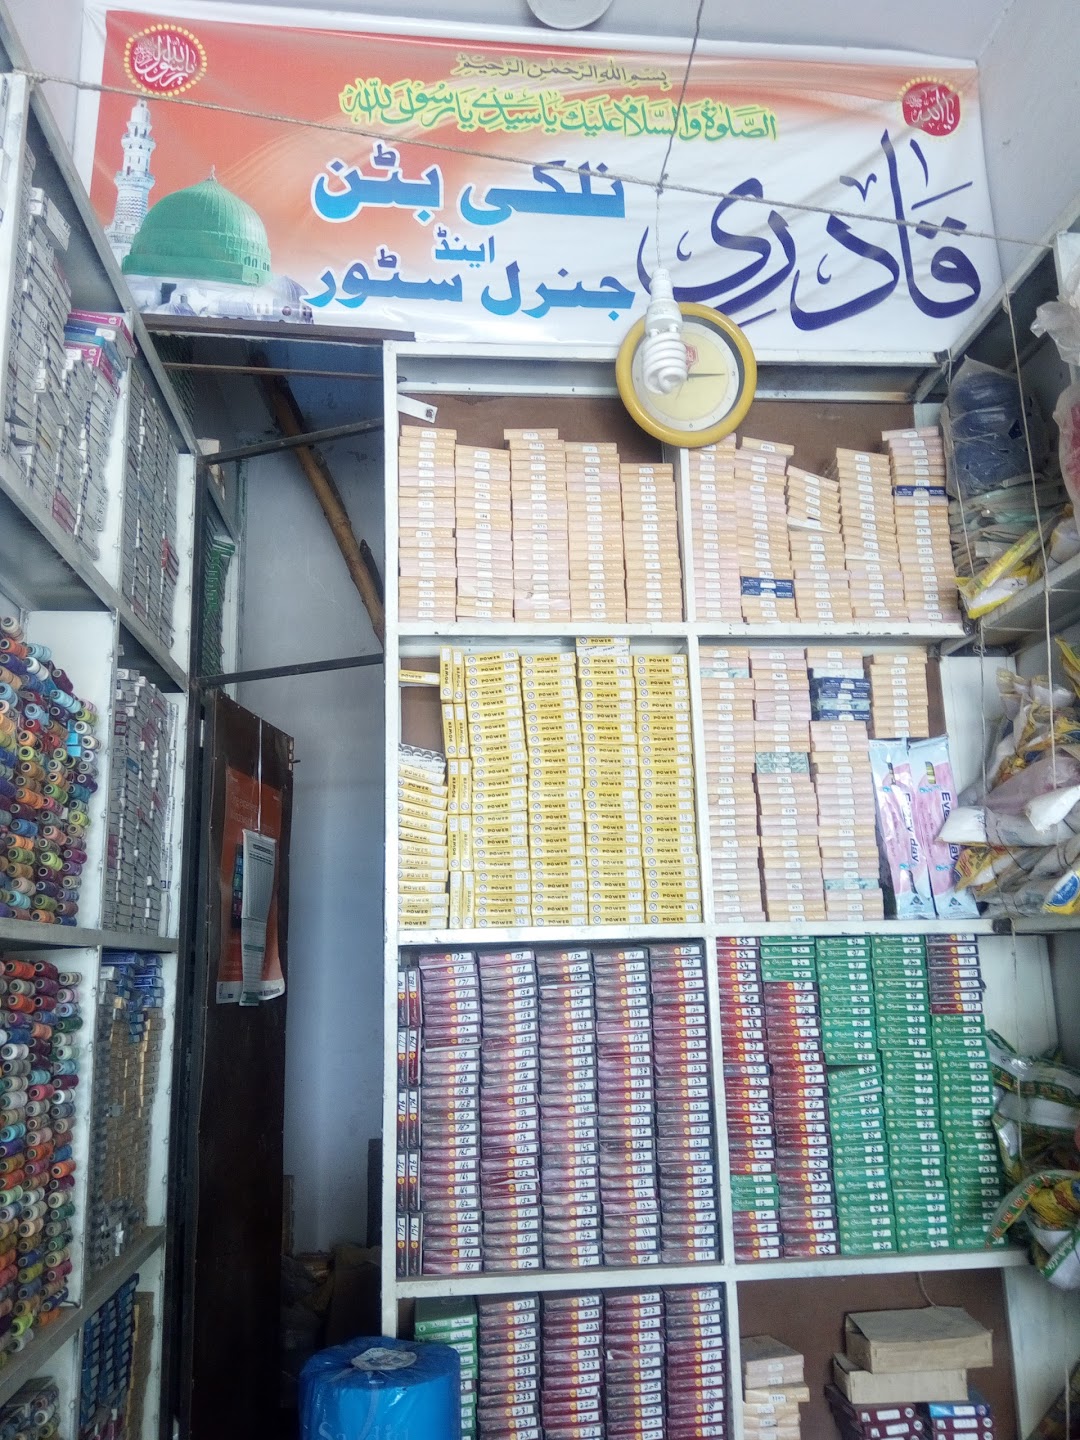 Qadri Nalki Button And General Store